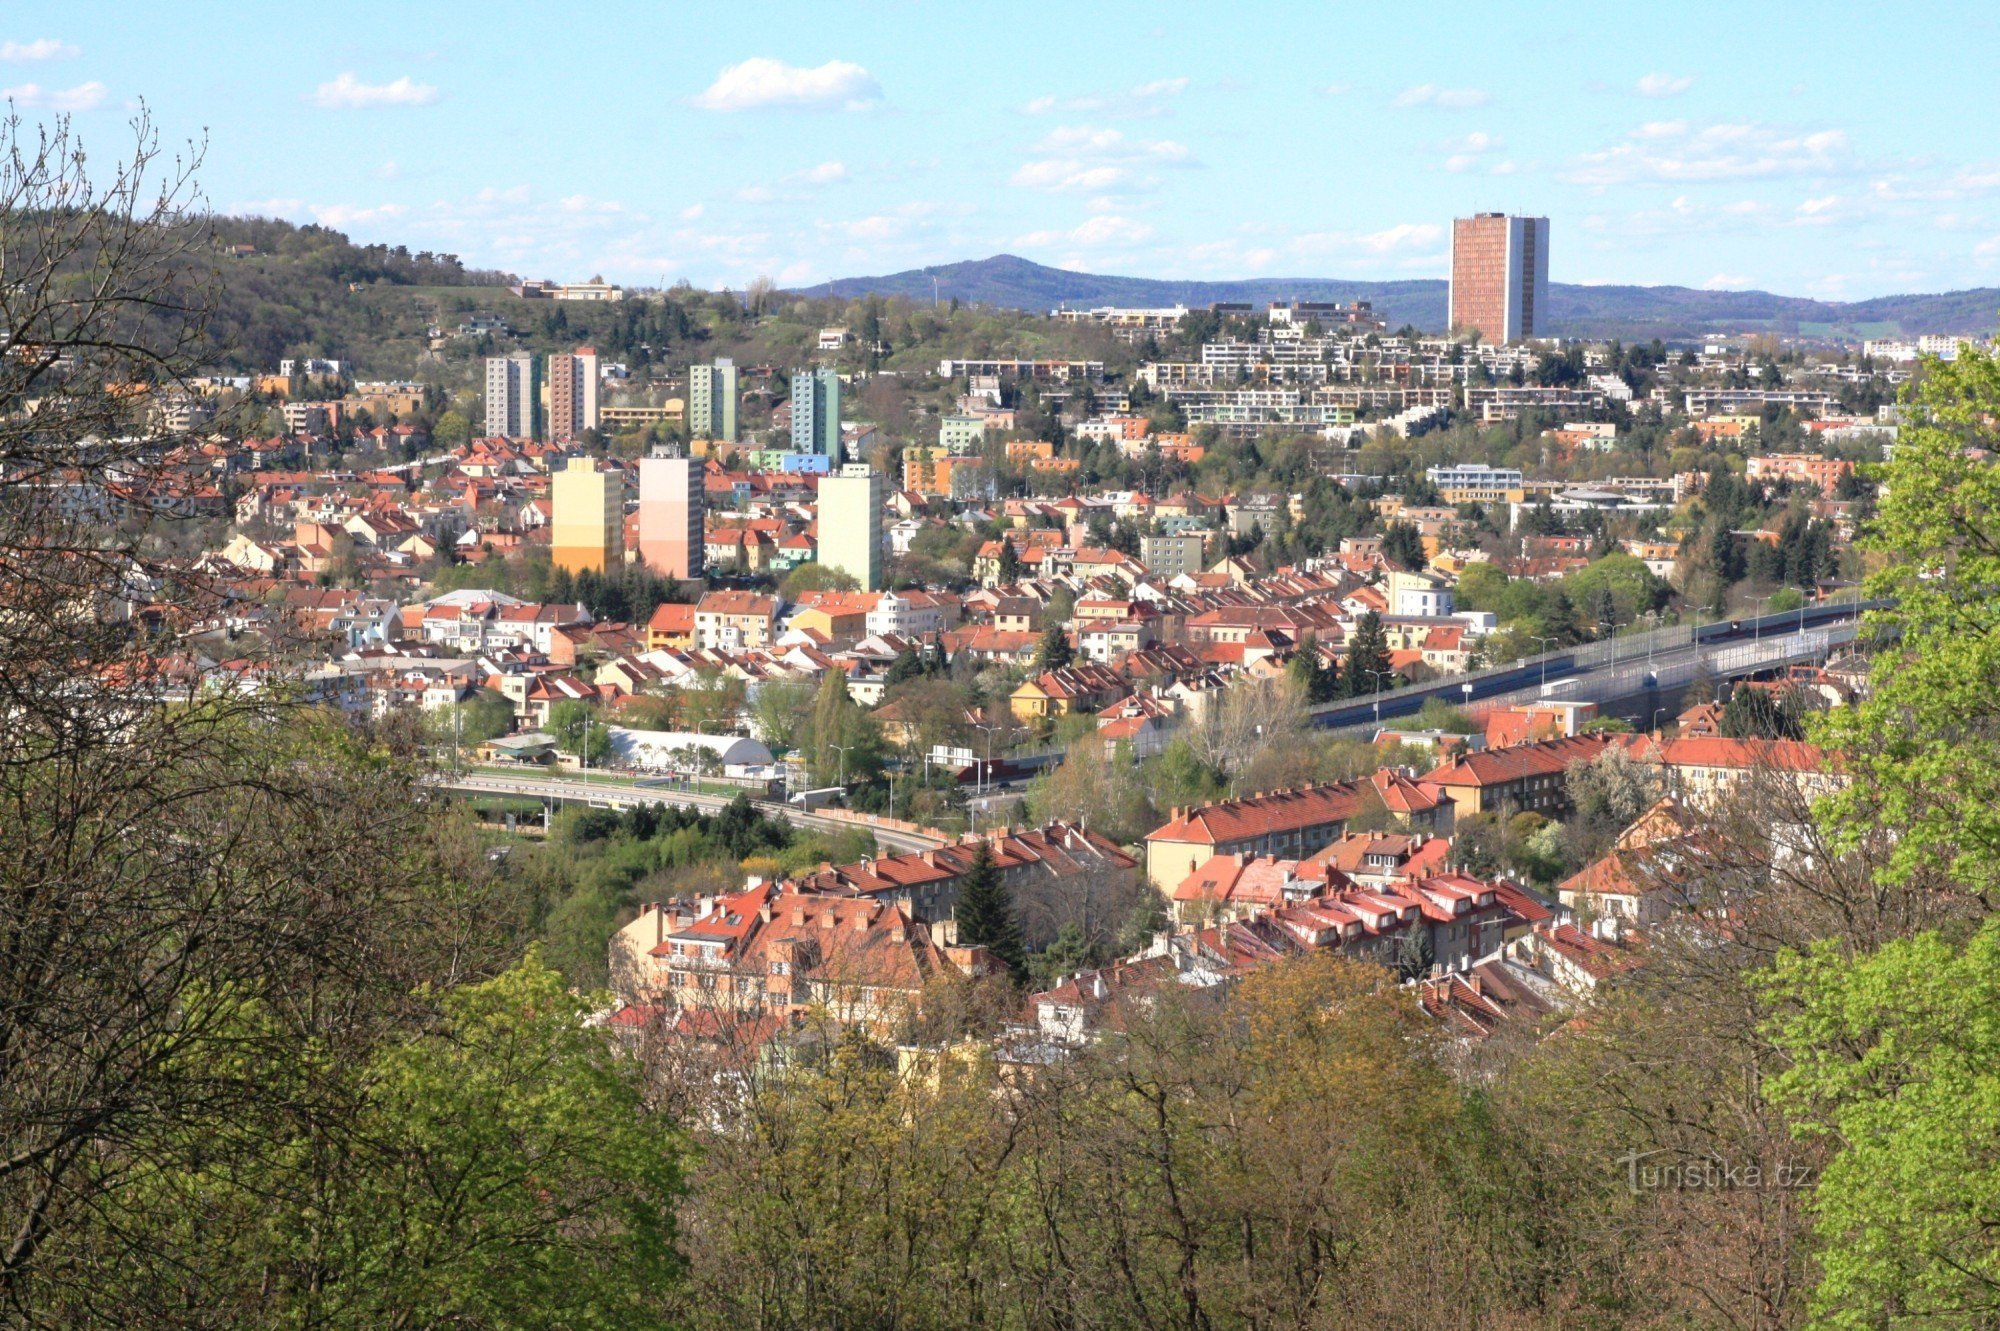 Vista desde el mirador del distrito de Žabovřesky y Komín